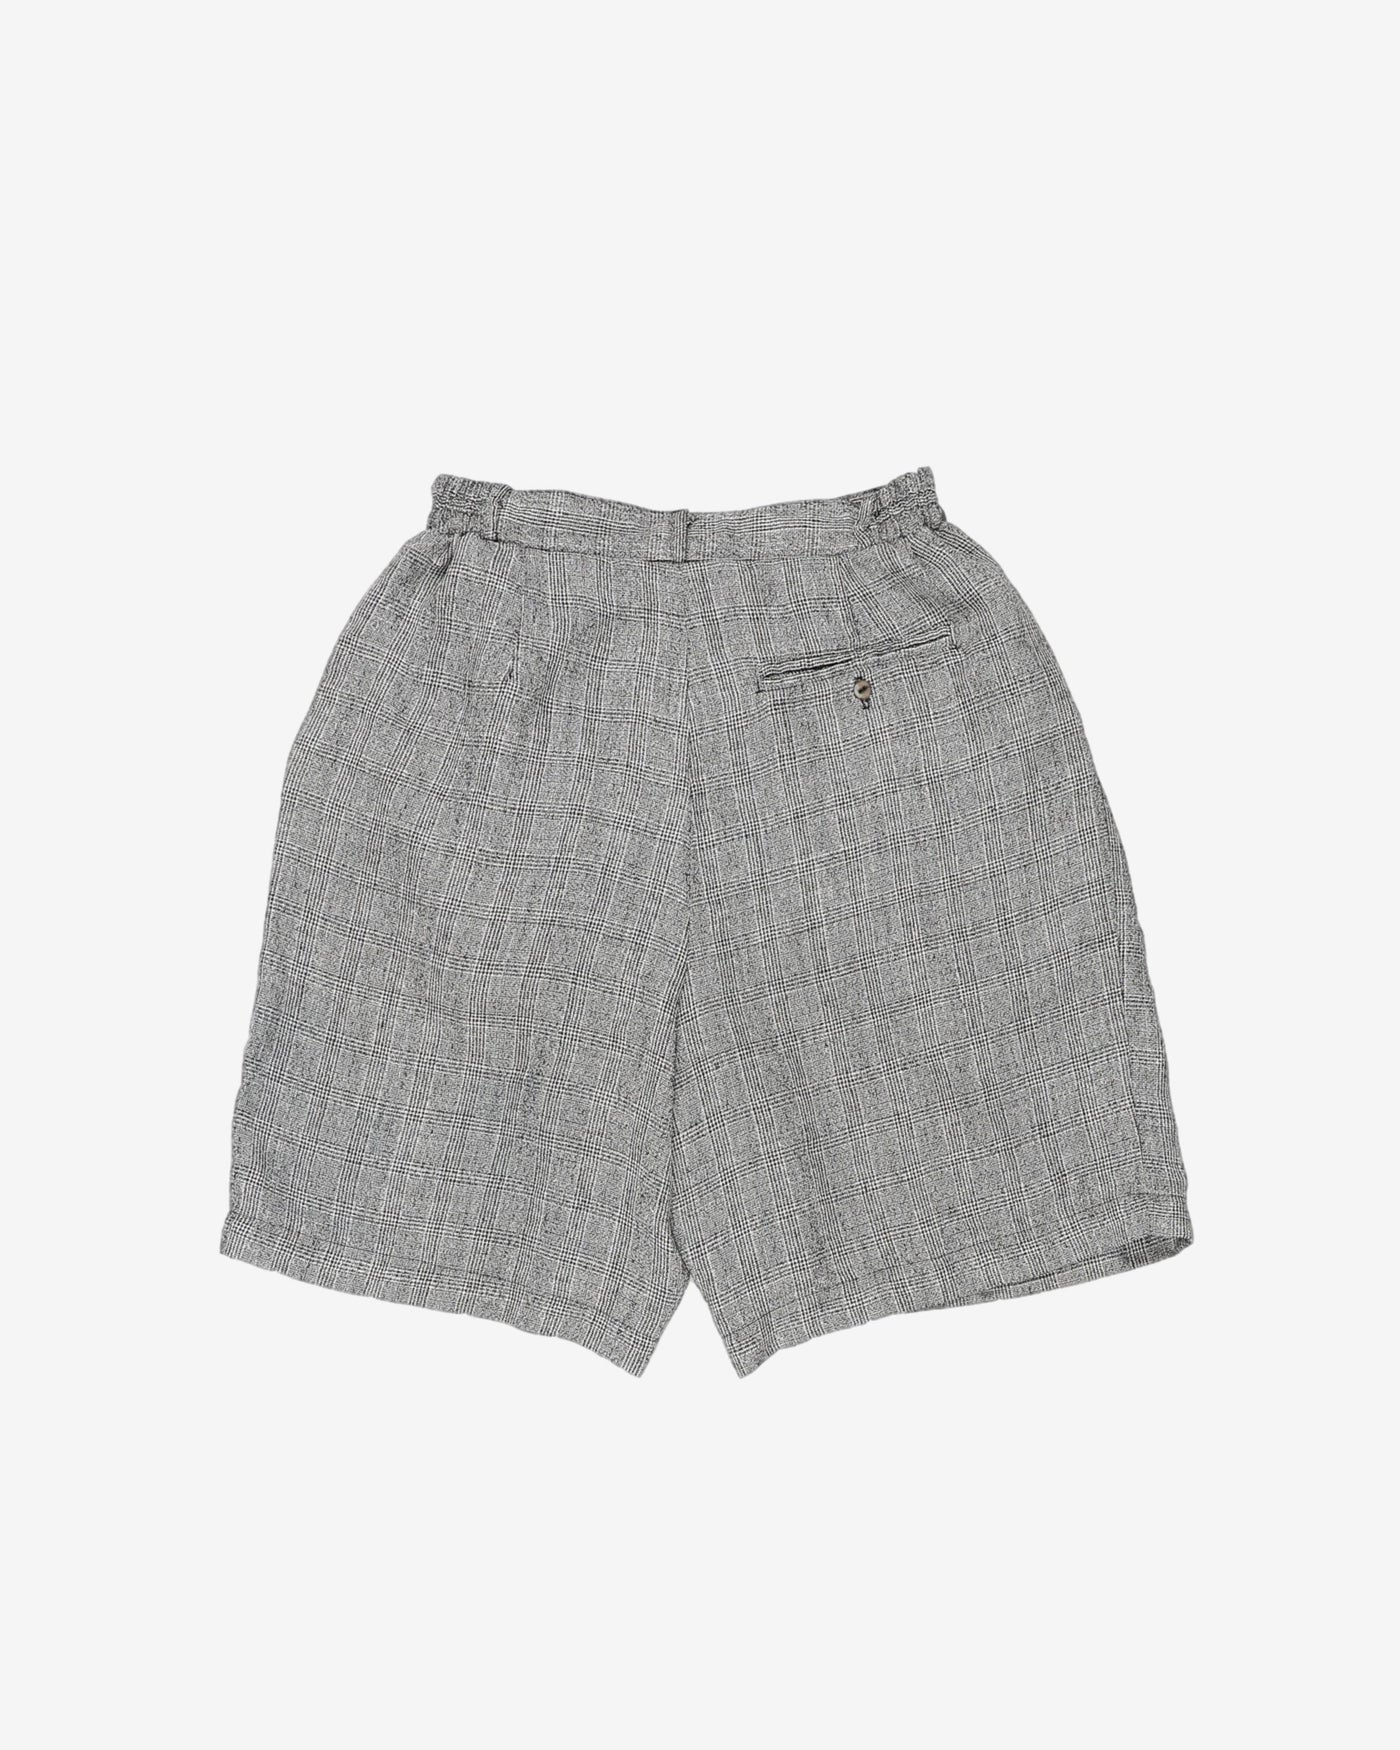 hana sport grey high waist shorts - w24